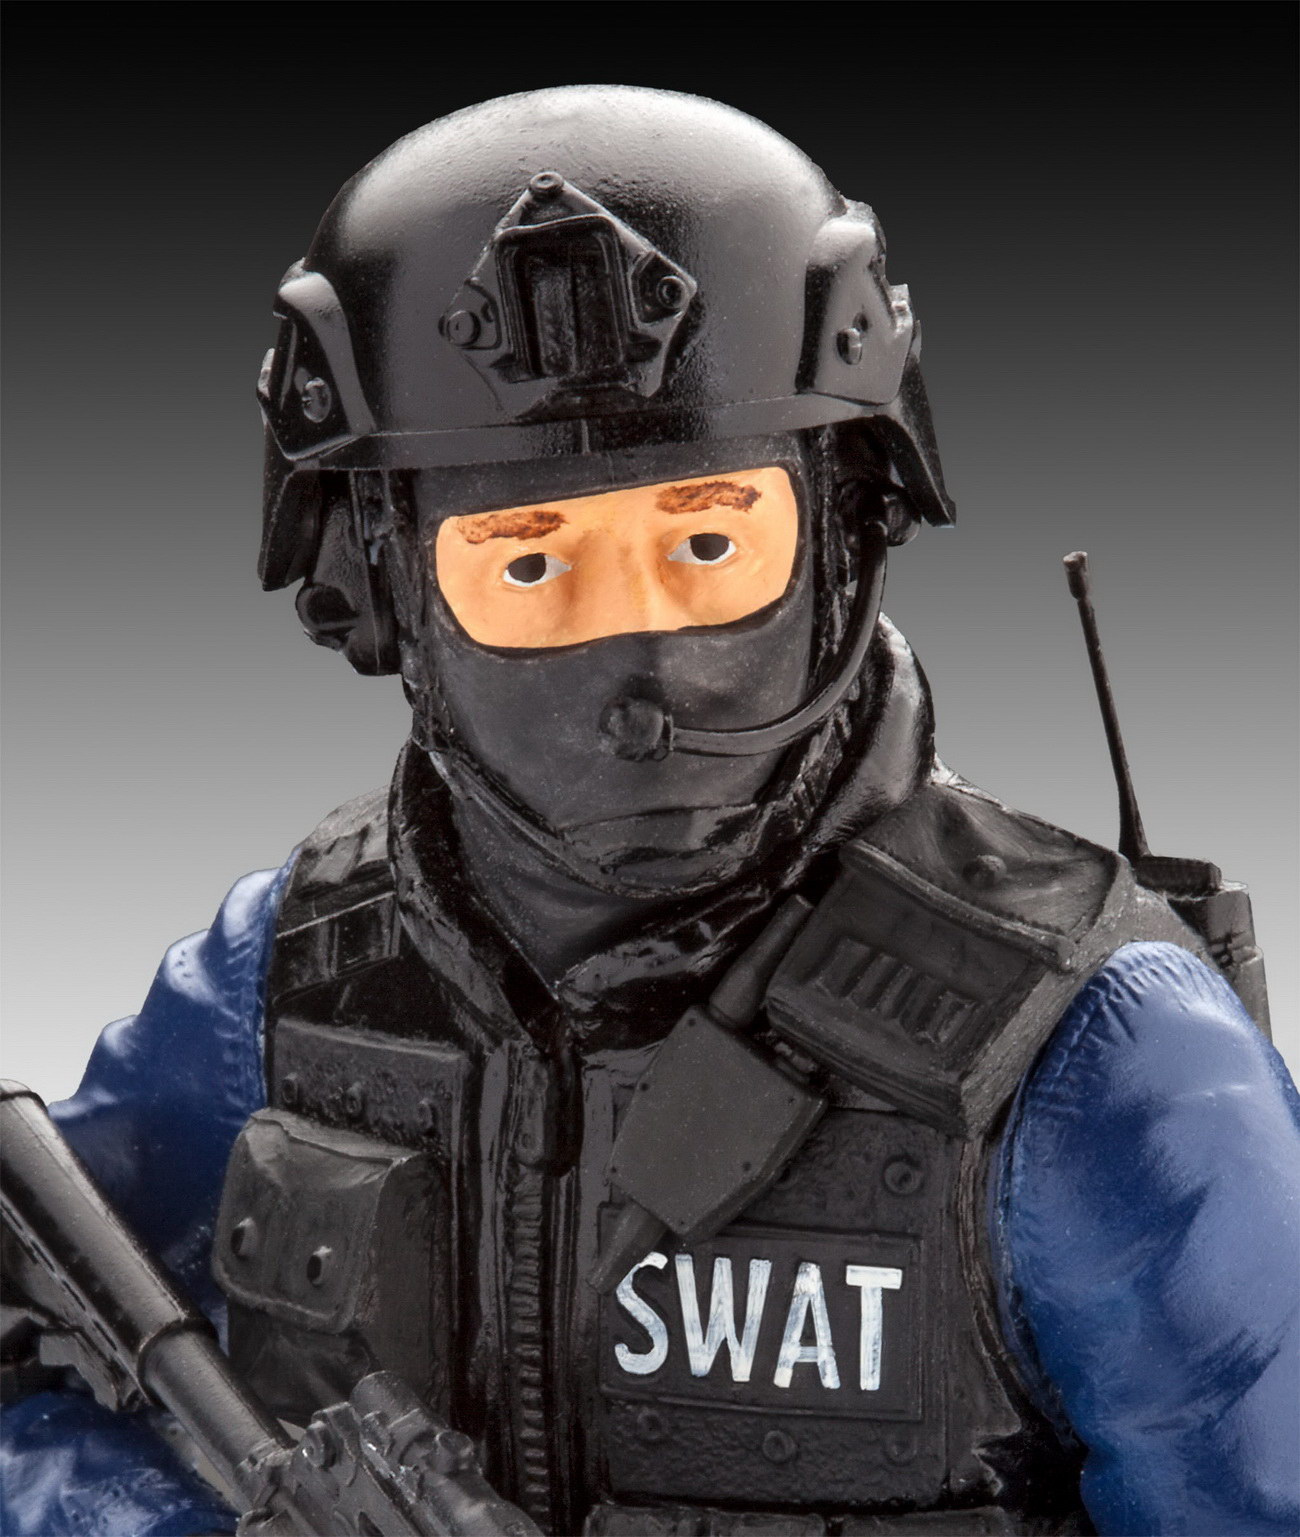 Revell 02805 - SWAT Officer - Modell Figur 